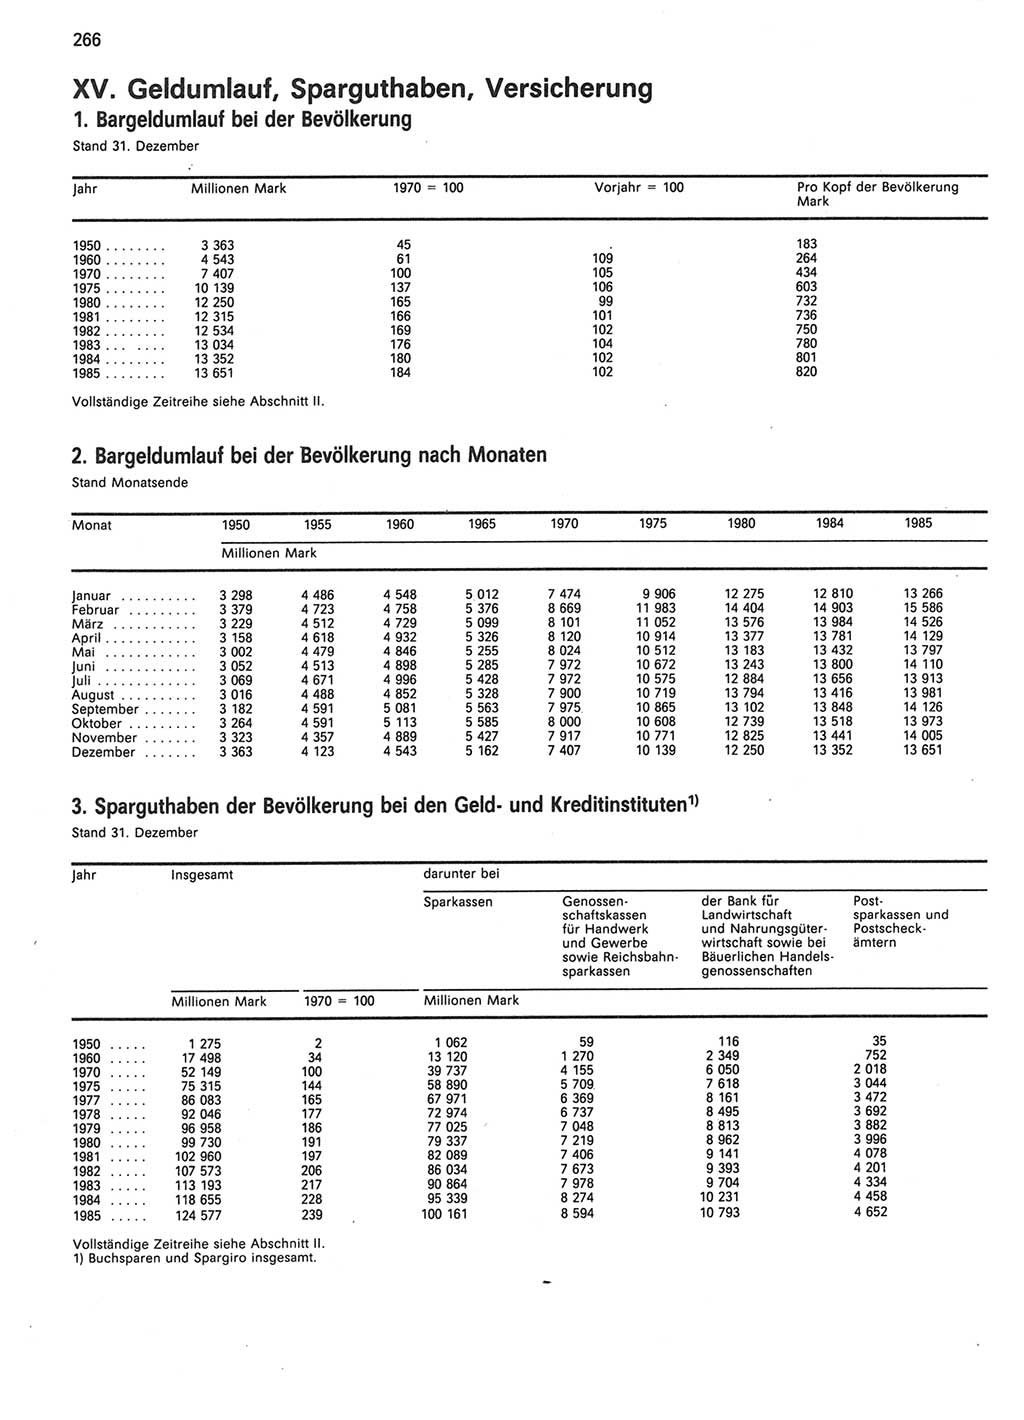 Statistisches Jahrbuch der Deutschen Demokratischen Republik (DDR) 1986, Seite 266 (Stat. Jb. DDR 1986, S. 266)